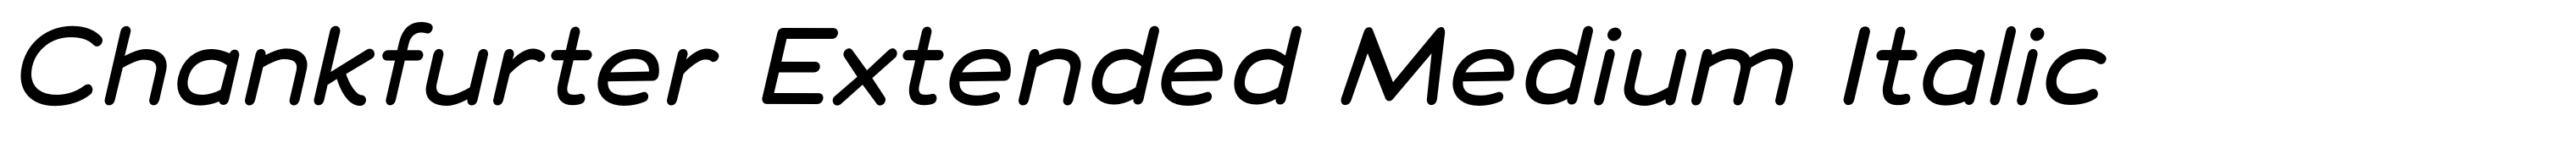 Chankfurter Extended Medium Italic